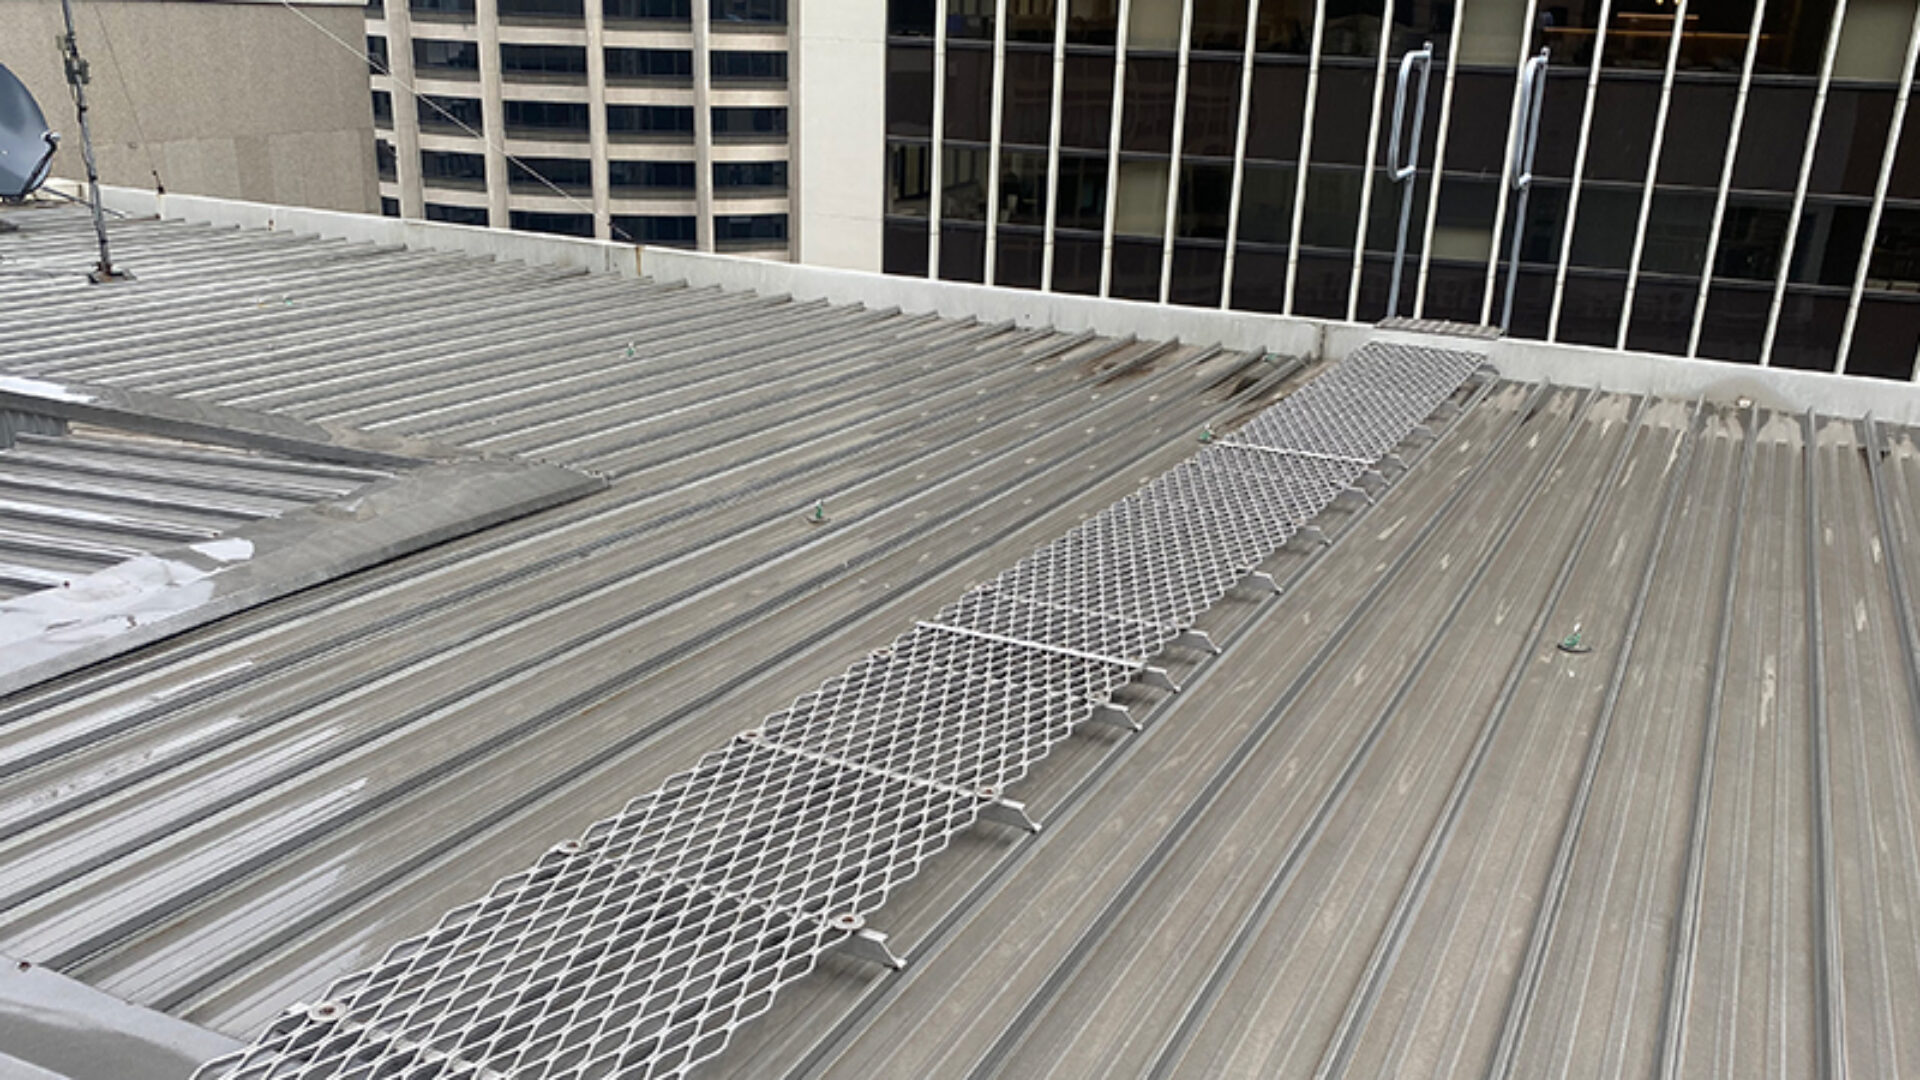 Metal walkway on a metal roof.